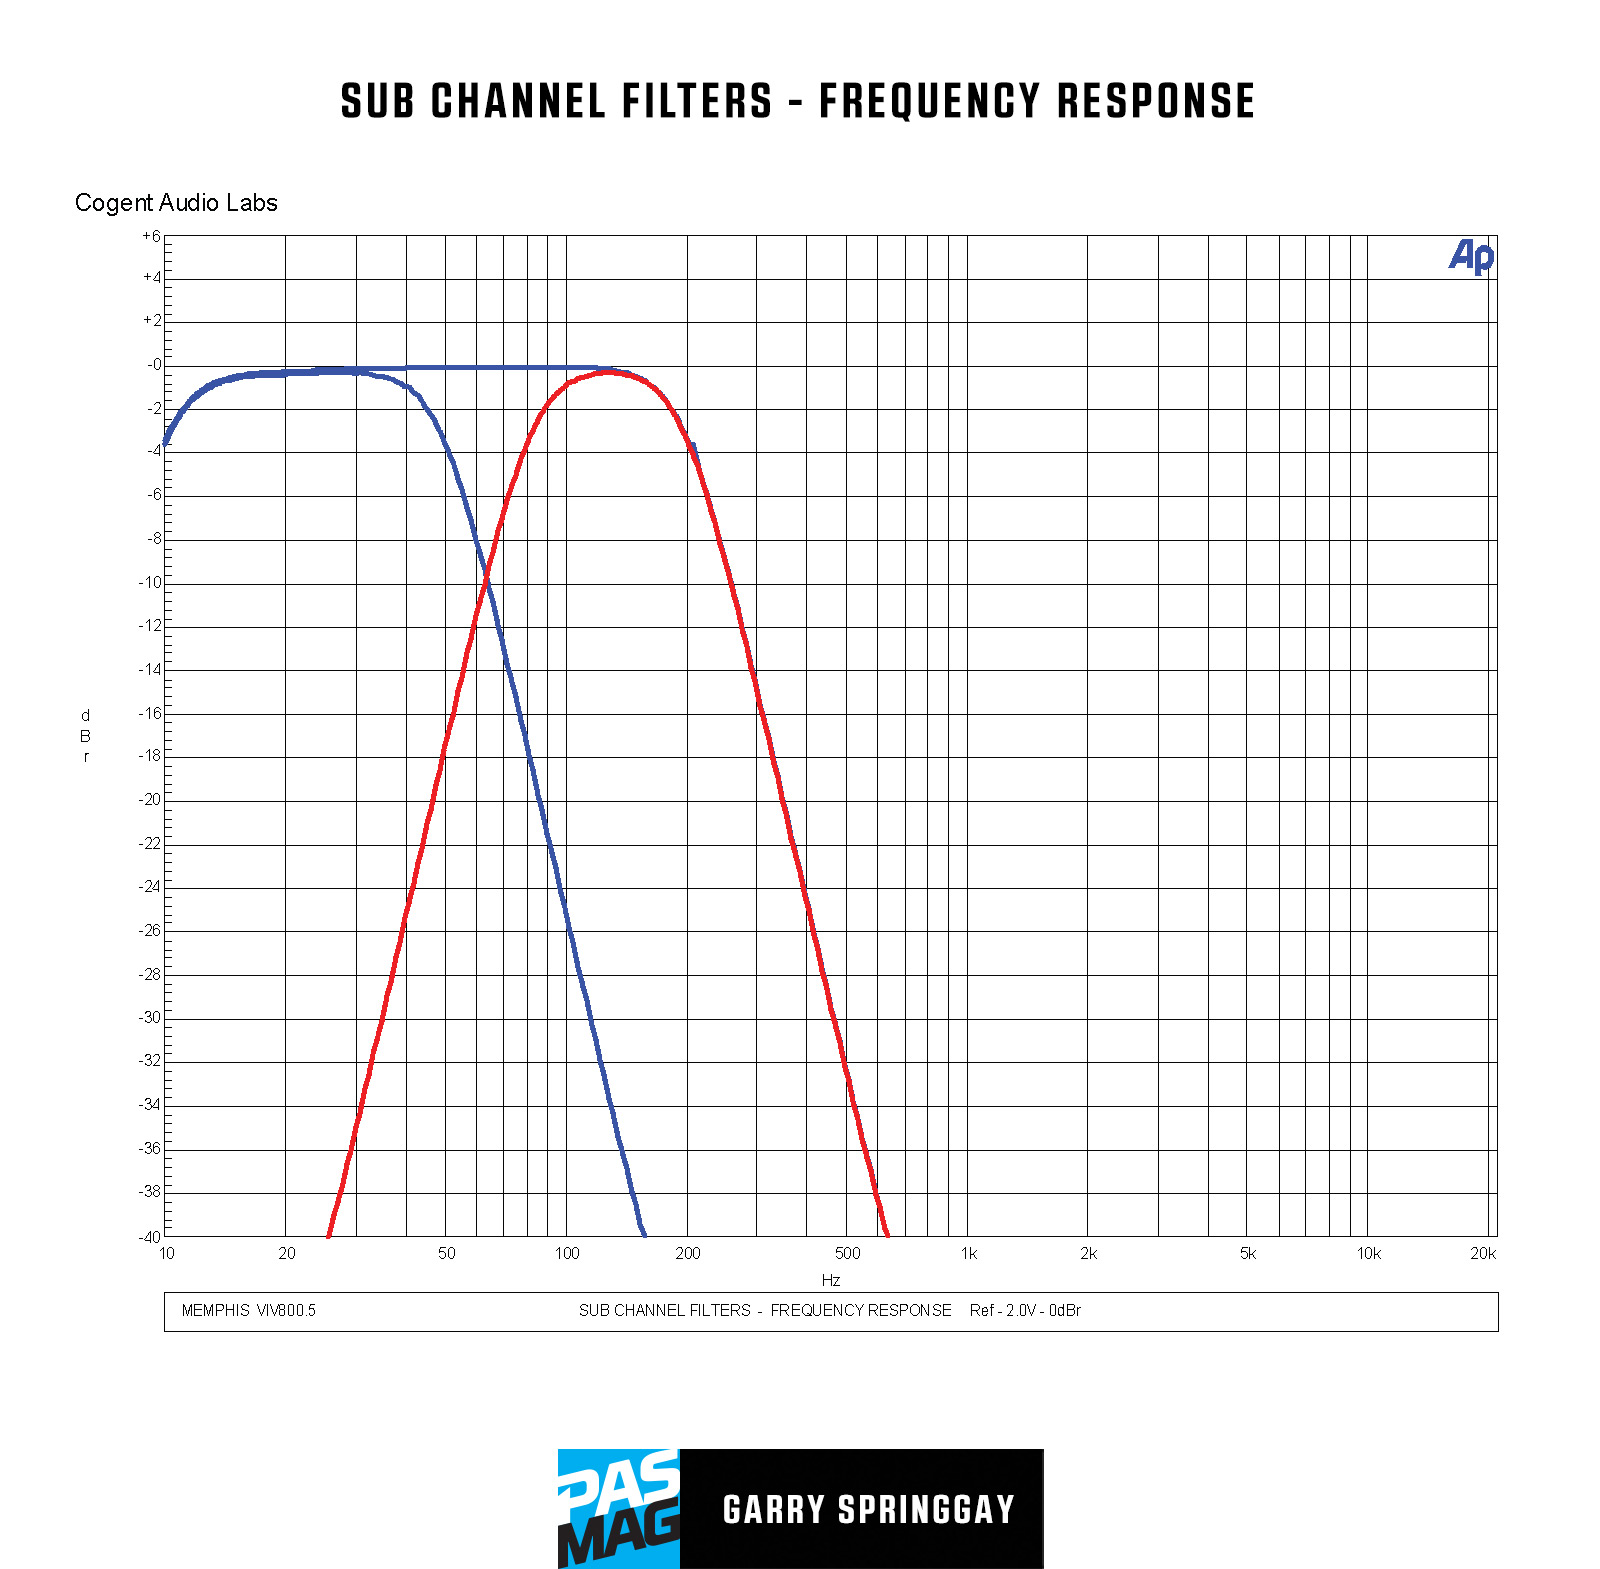 Memphis Car Audio VIV800.5 Graphs 05 SUB CHANNEL FILTERS